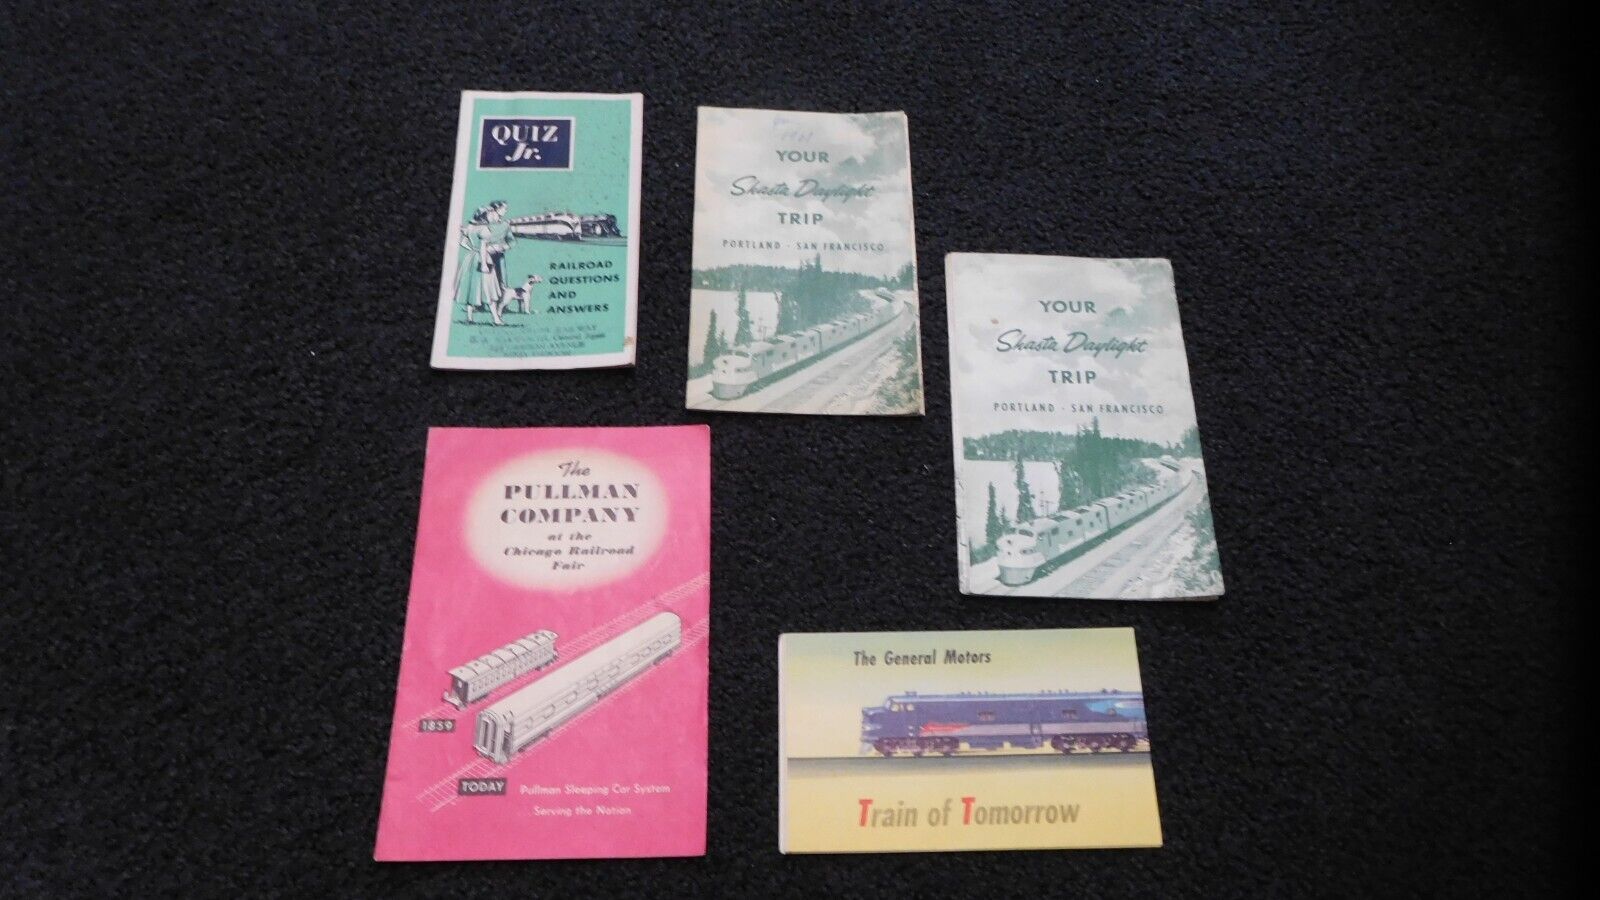 Lot of train brochures -1947 GENERAL MOTORS TRAIN OF TOMORROW, Quiz Jr., Shasta